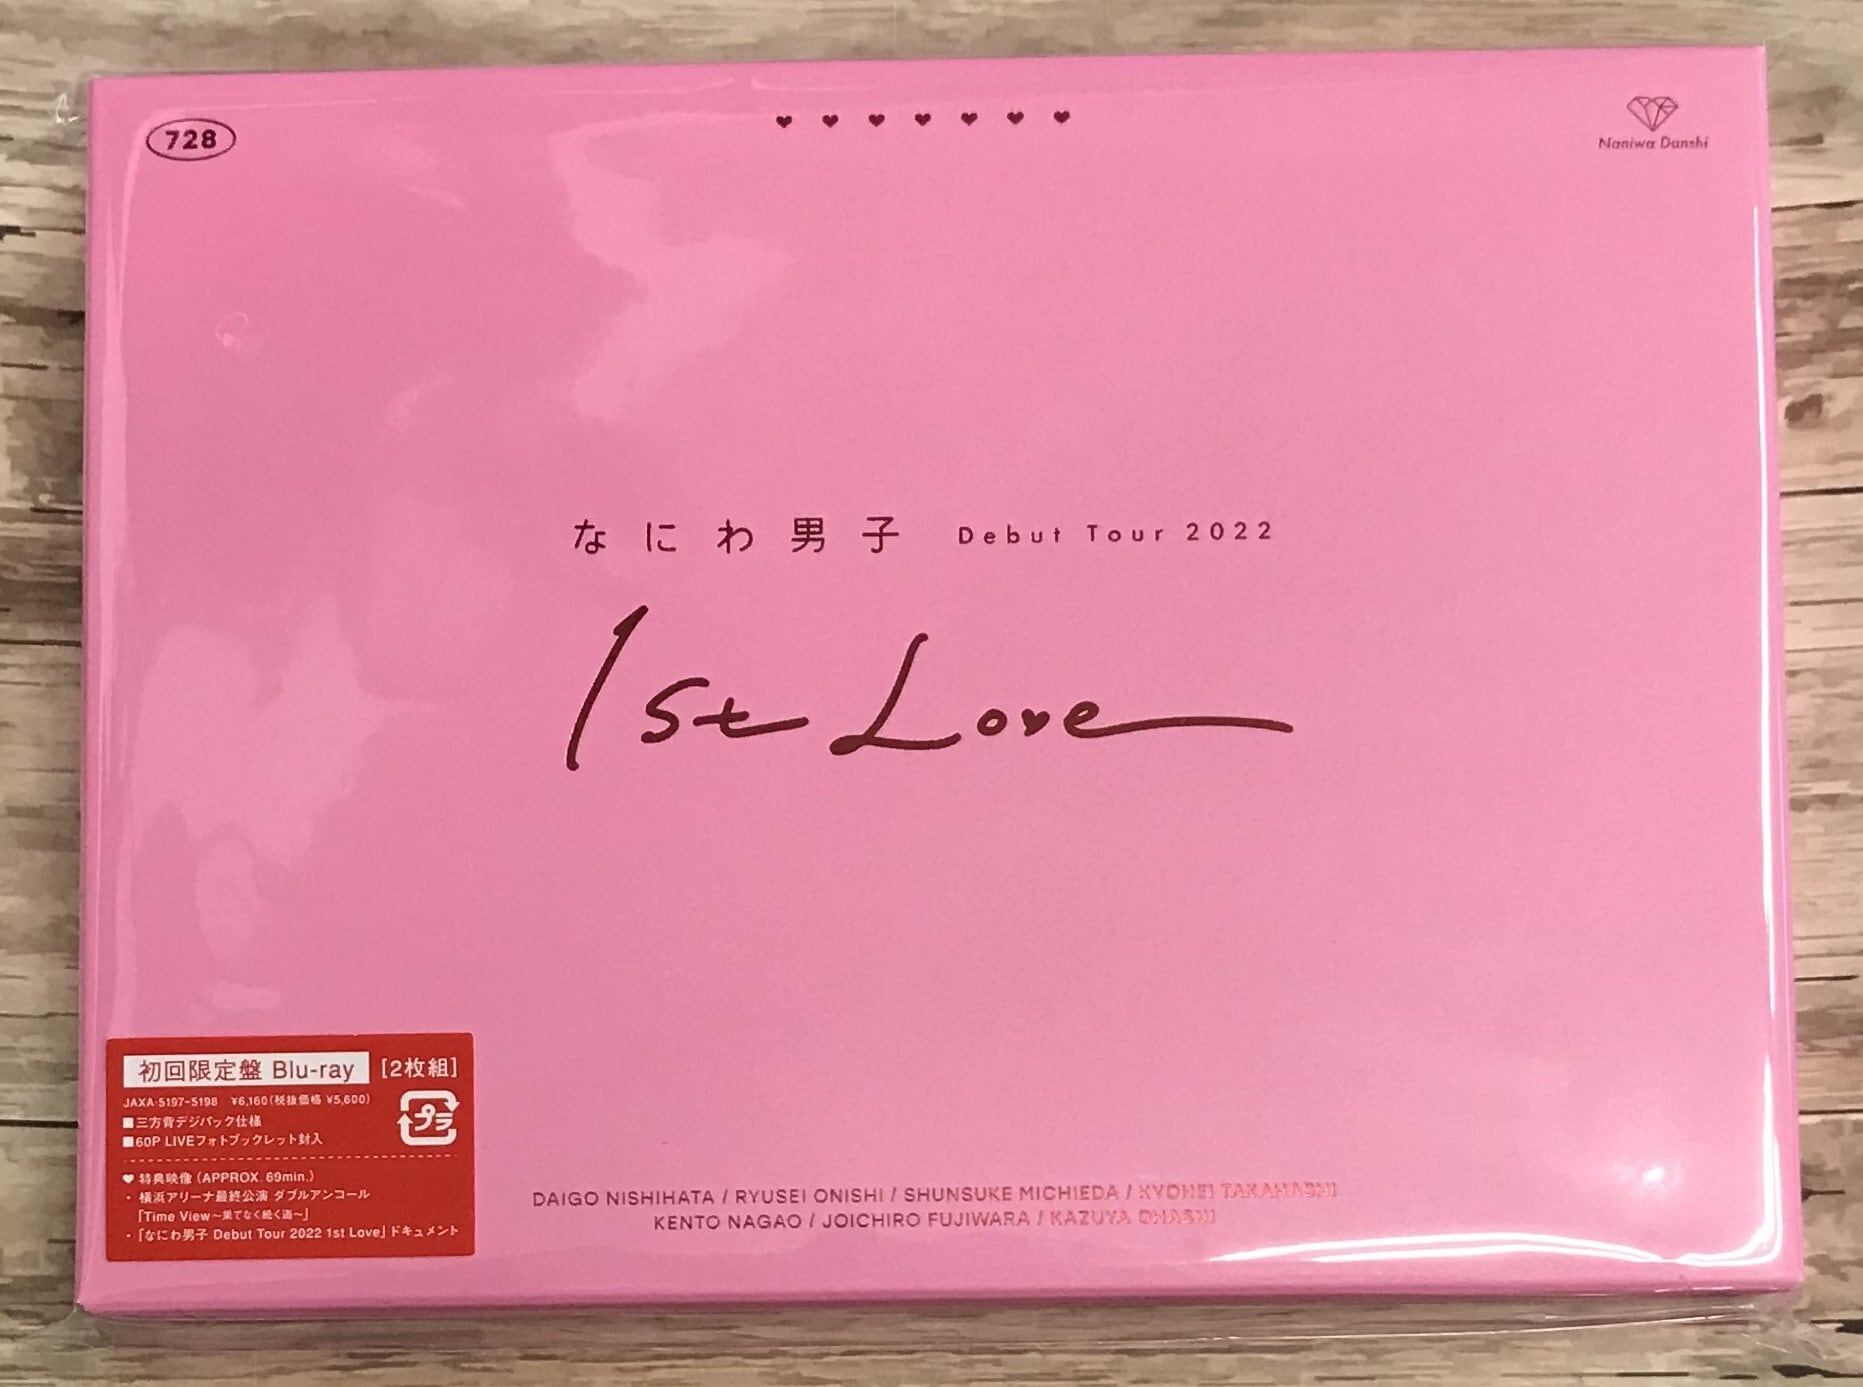 なにわ男子 1st Love Blu-ray 初回限定盤